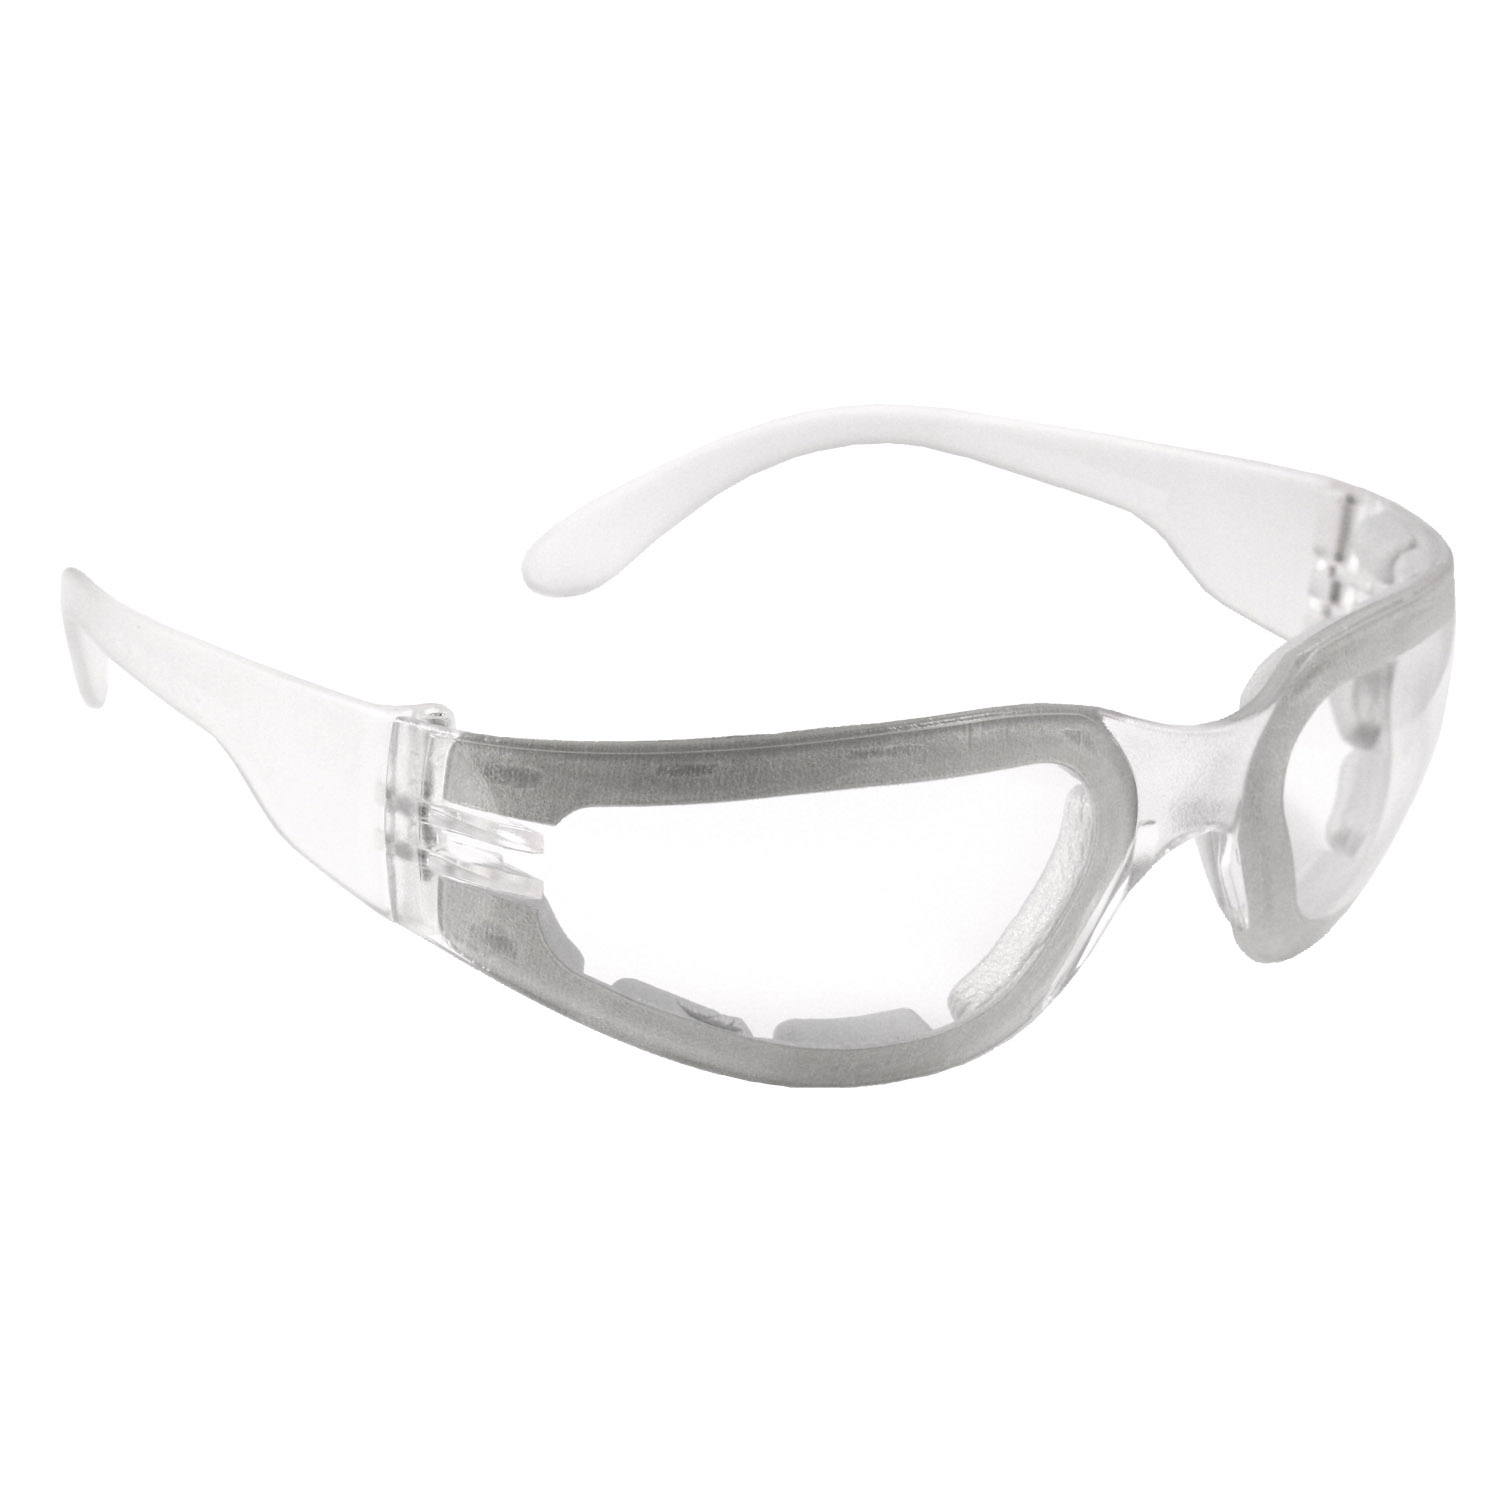 Mirage™ Foam Small Safety Eyewear - Clear Frame - Clear Anti-Fog Lens